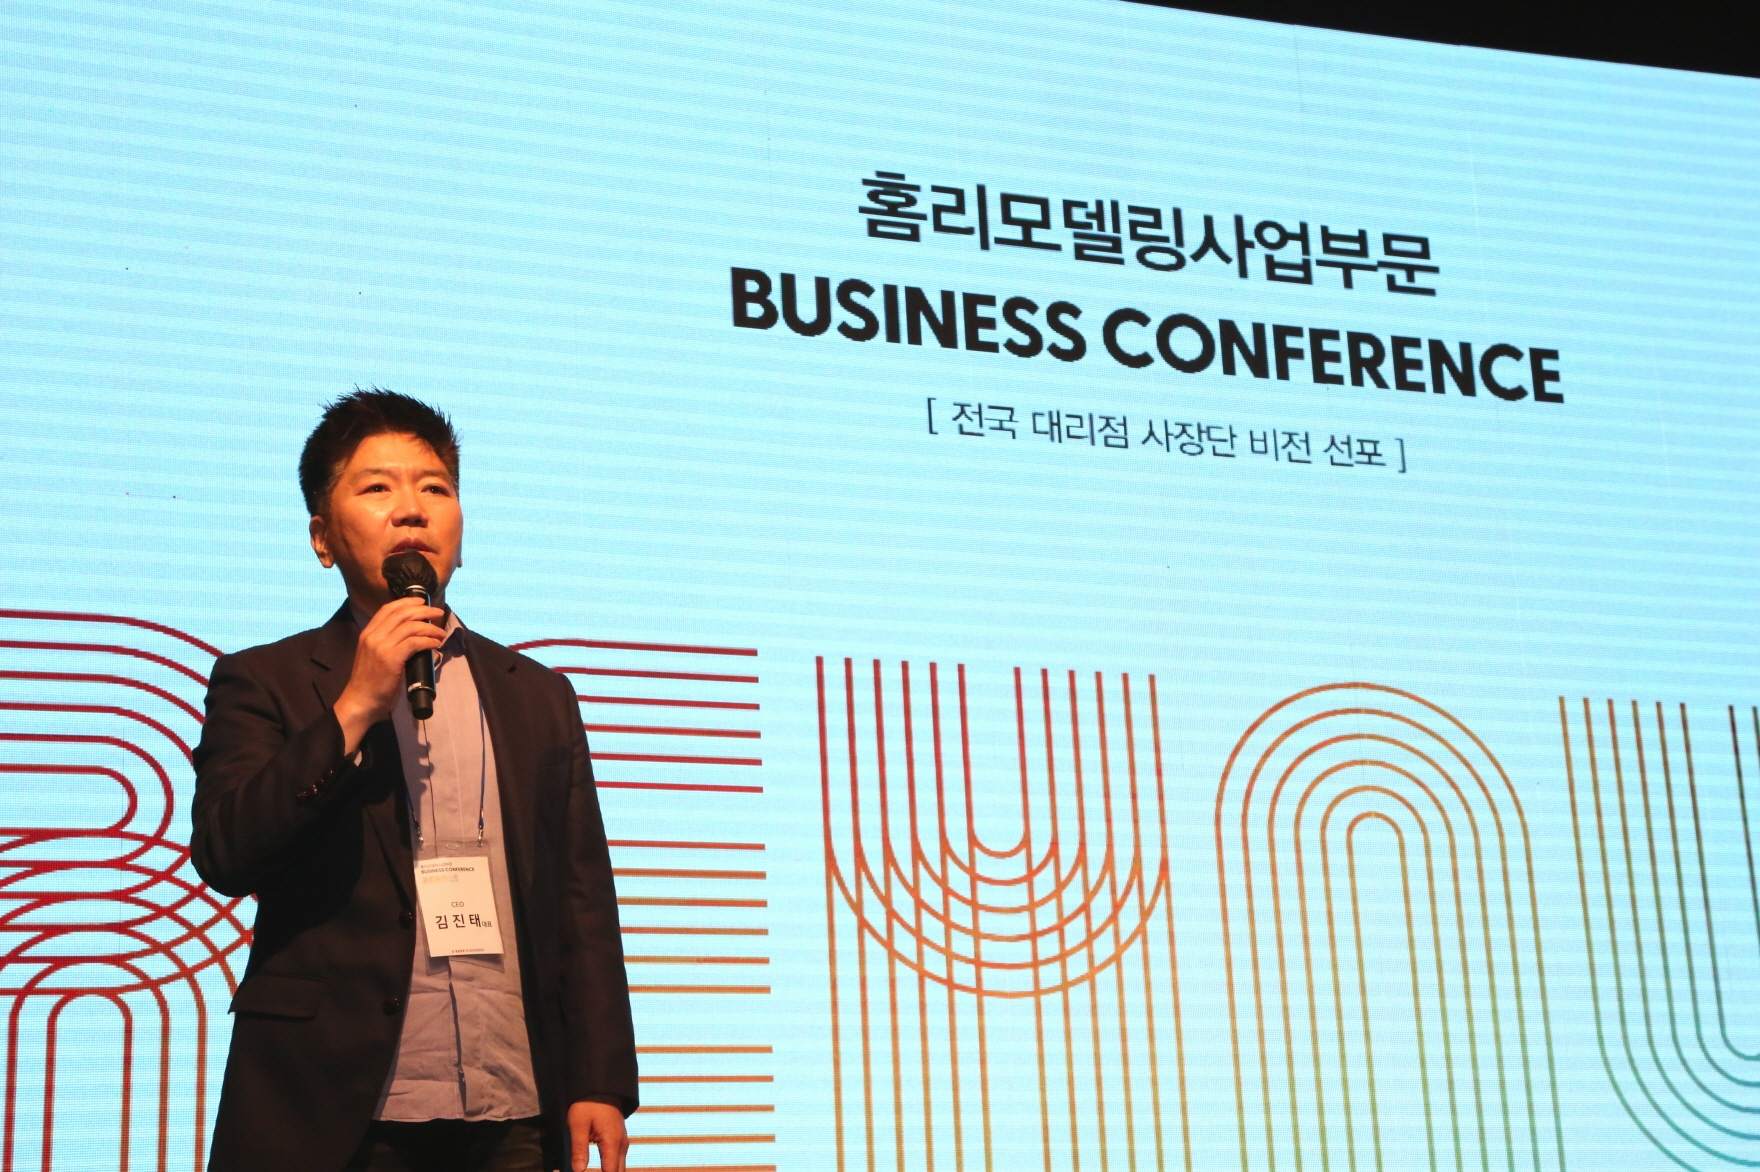 2일 김진태 한샘 대표가 비즈니스컨퍼런스에서 성장전략 로드맵을 발표하고 있다./사진제공=한샘 